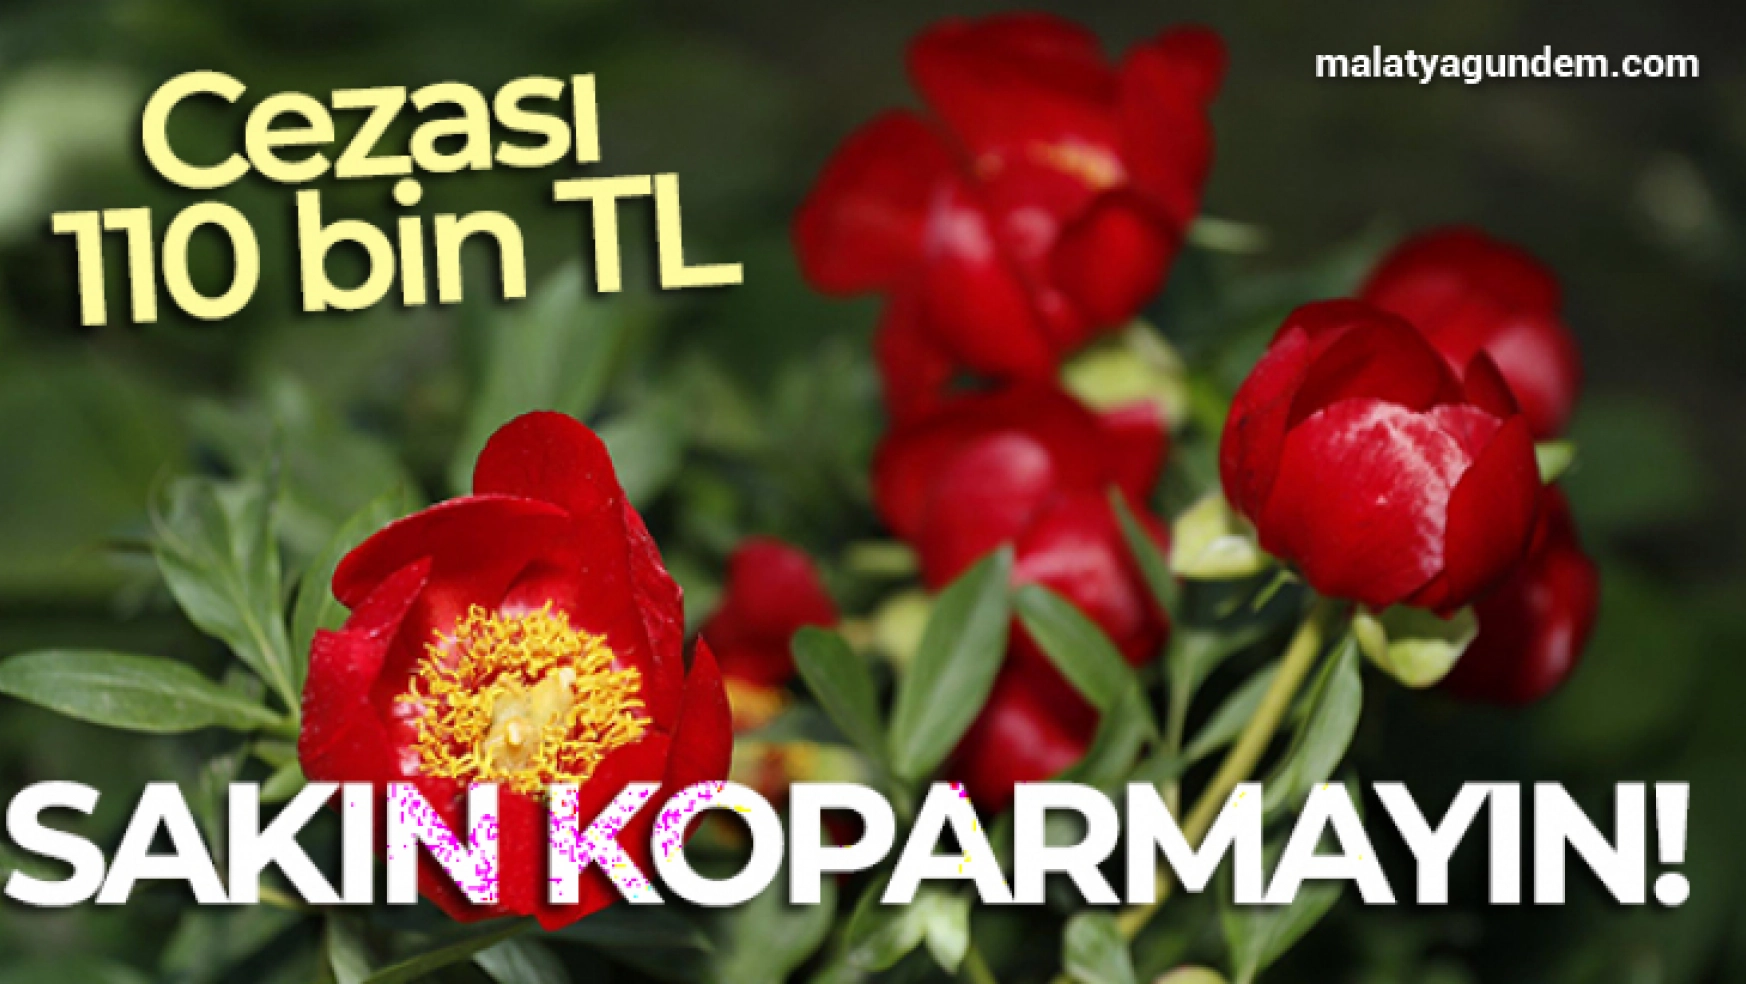 Nadir yetişen Şakayık çiçeğini koparmanın cezası 110 bin TL